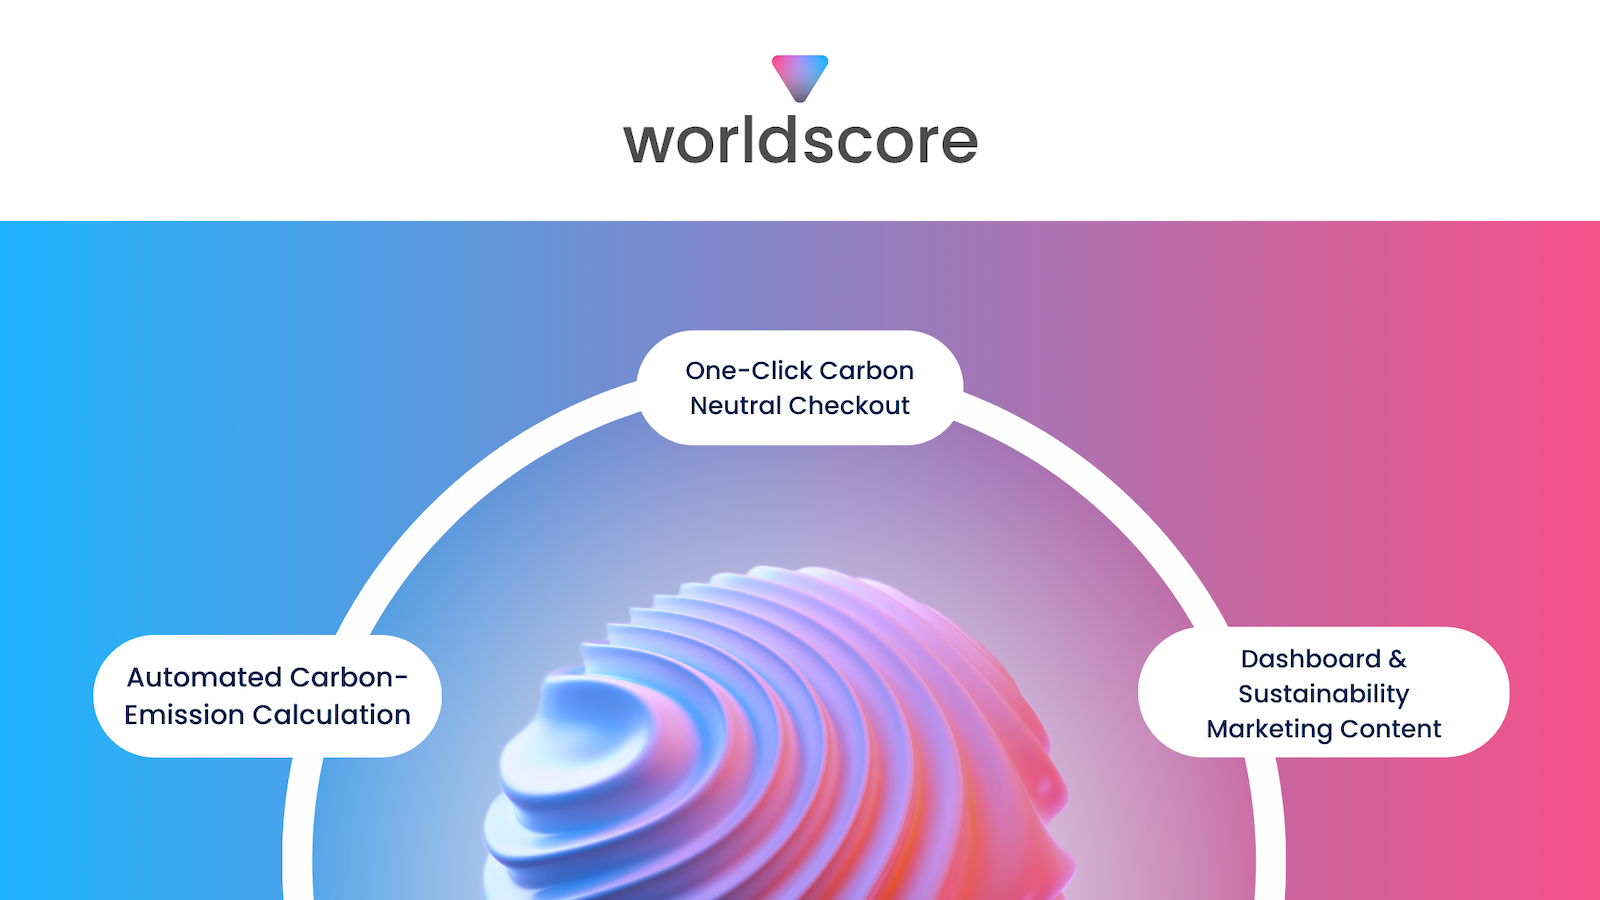 worldscore logo på toppen af en bølget sfære, der beskriver funktionerne